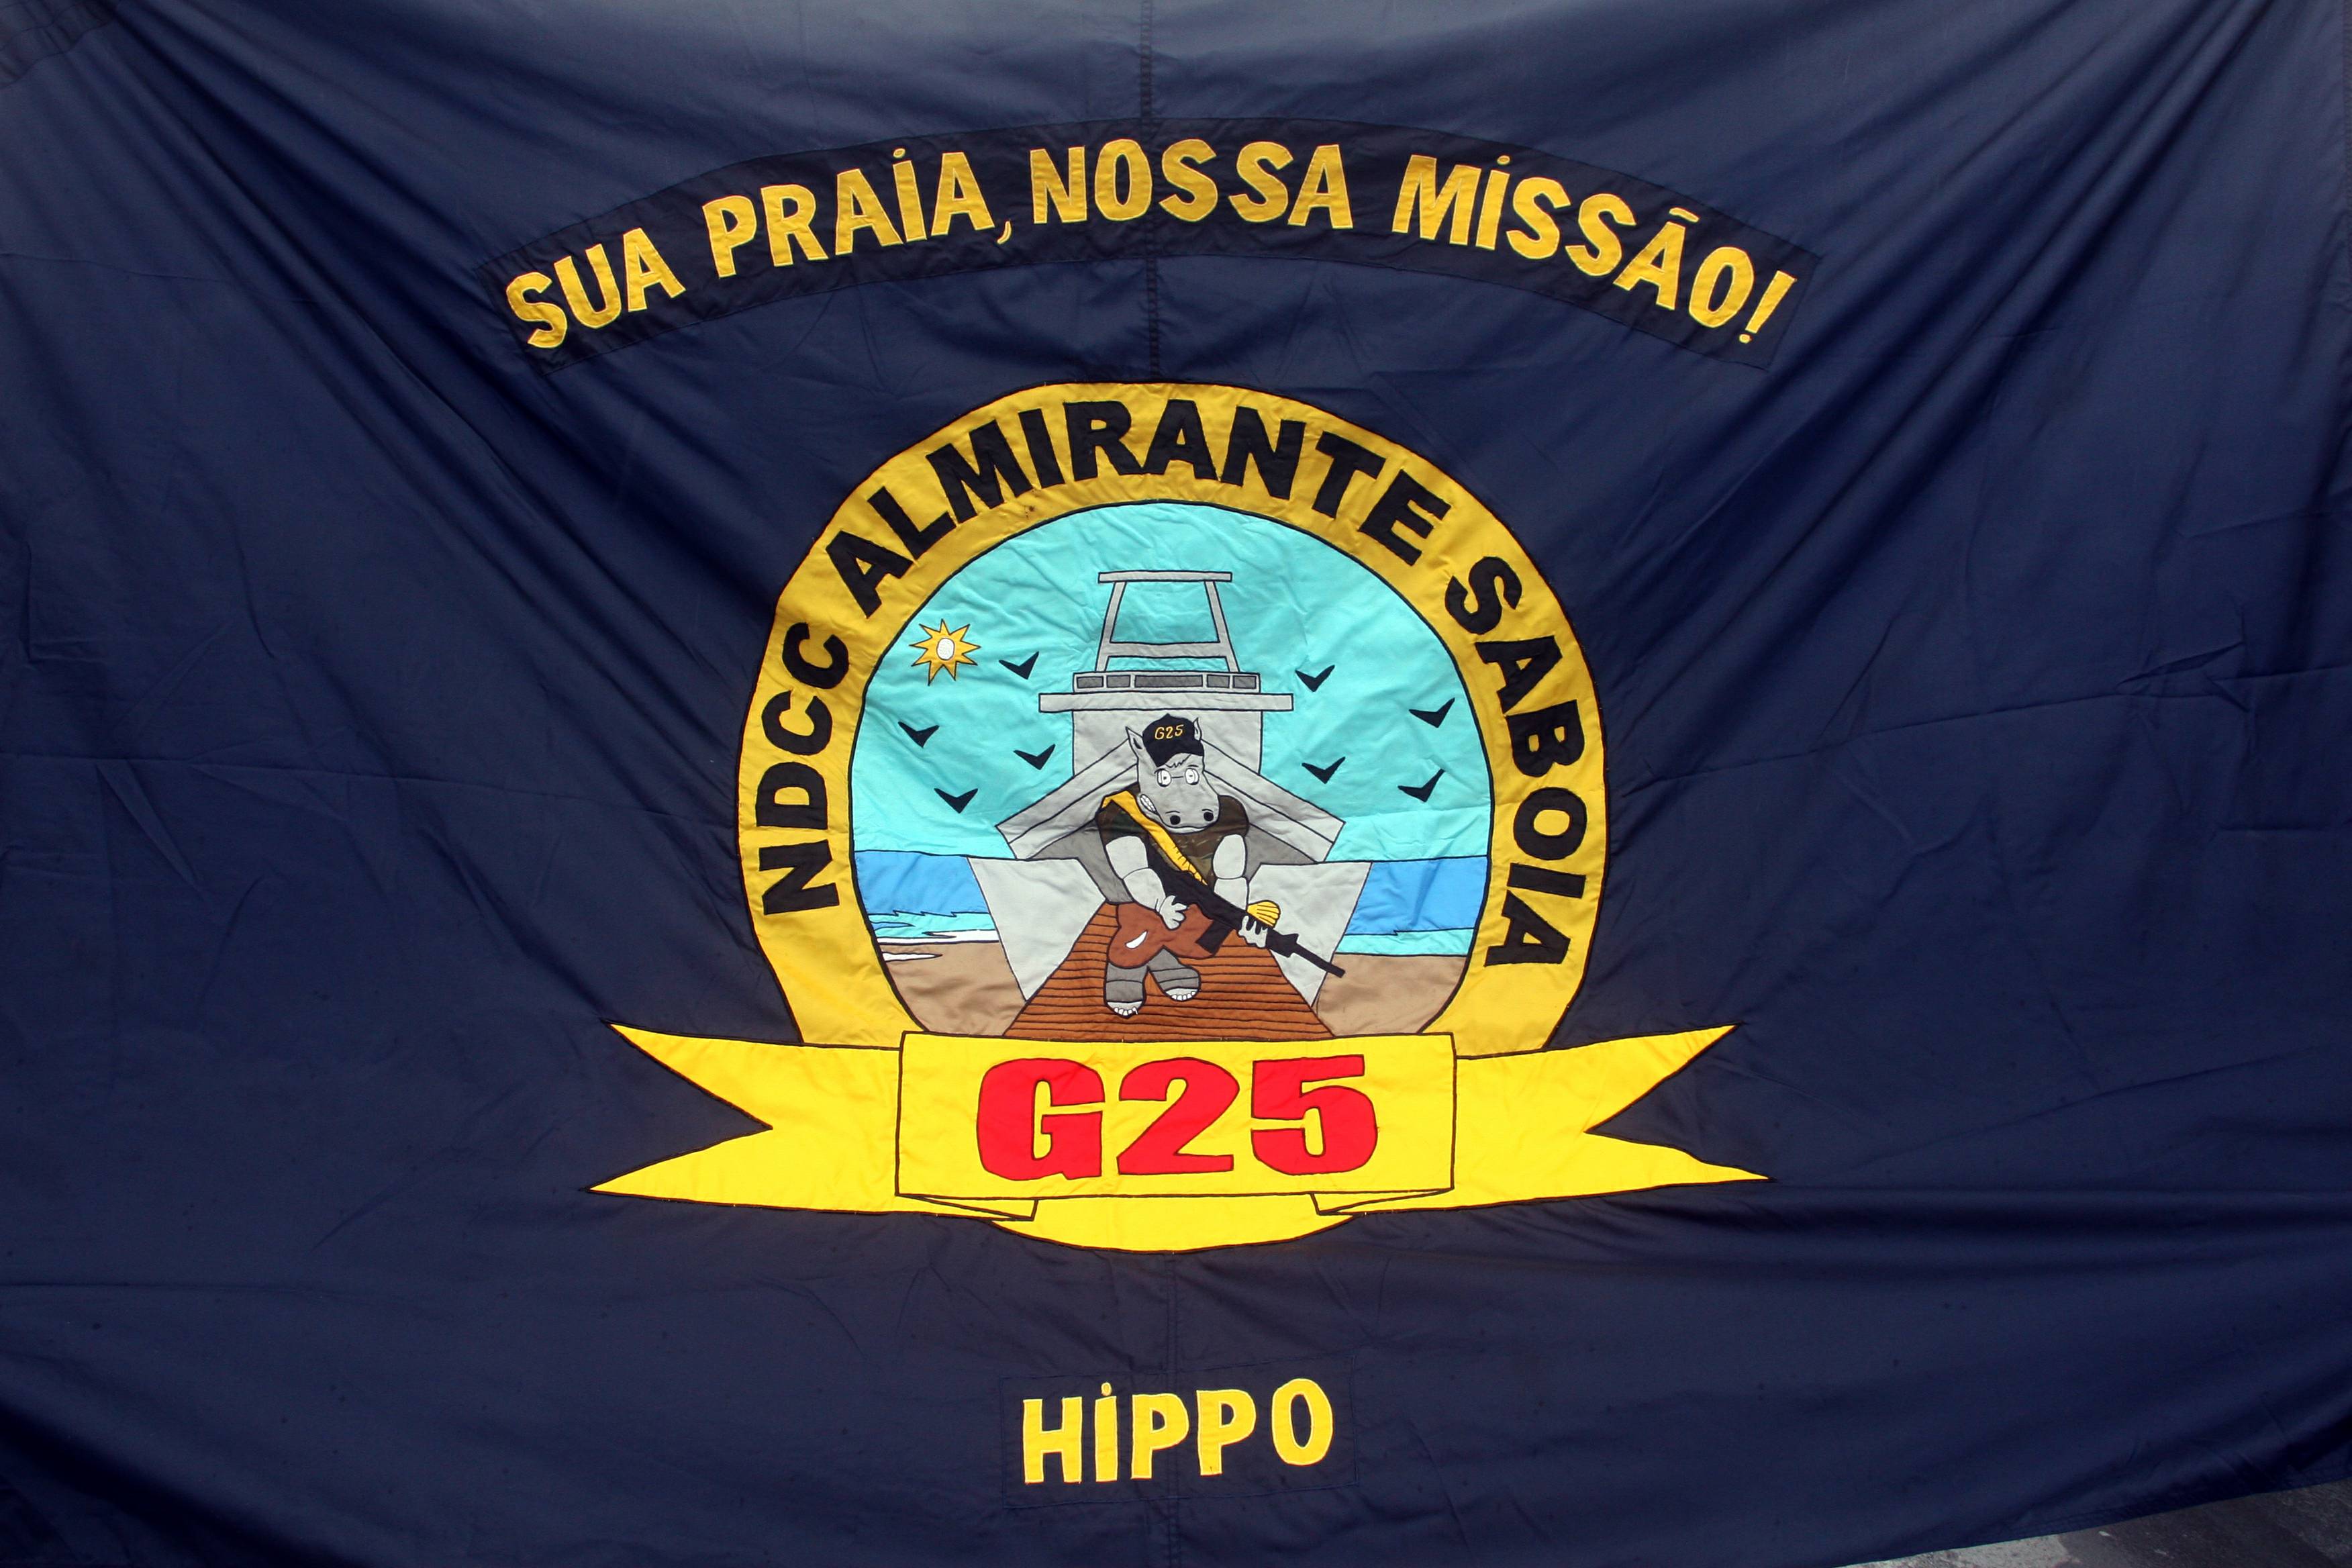 Bandeira de Faina do Hippo. (foto: Luiz Padilha)